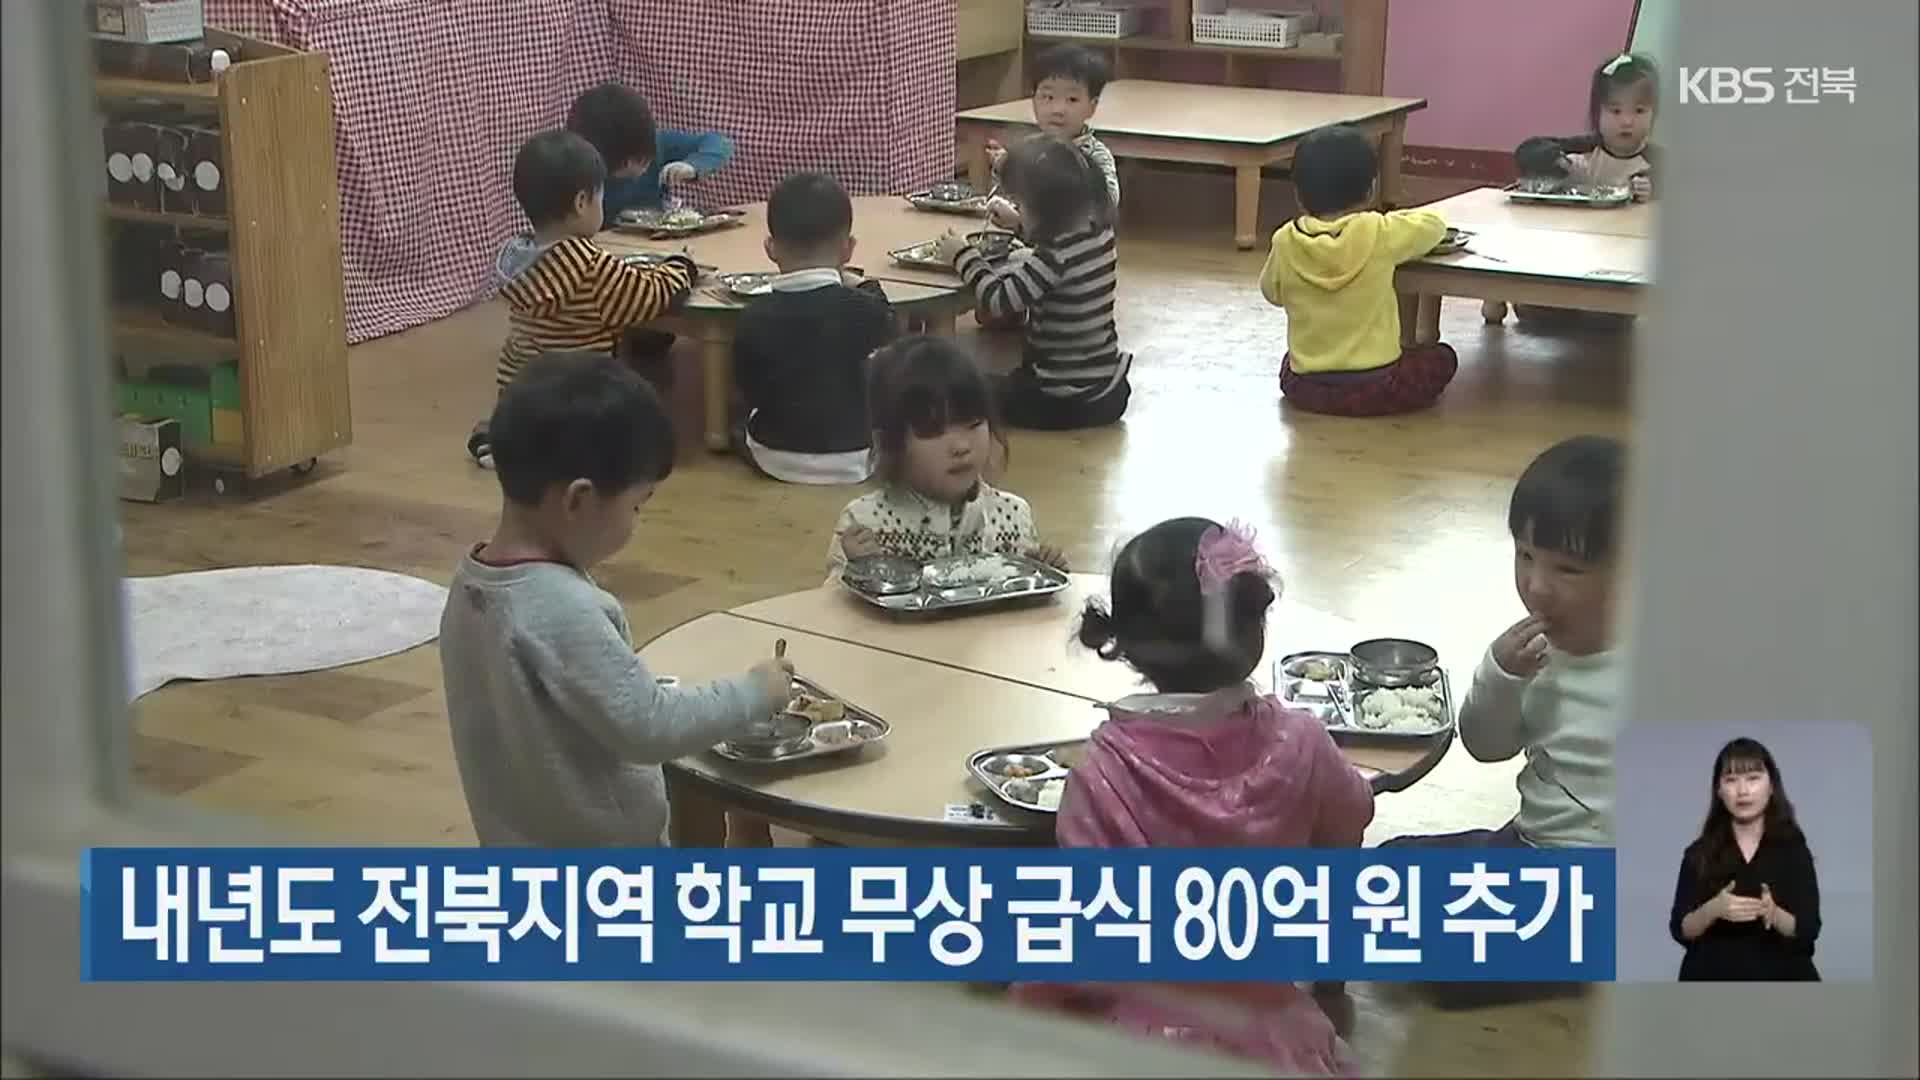 내년도 전북지역 학교 무상 급식 80억 원 추가